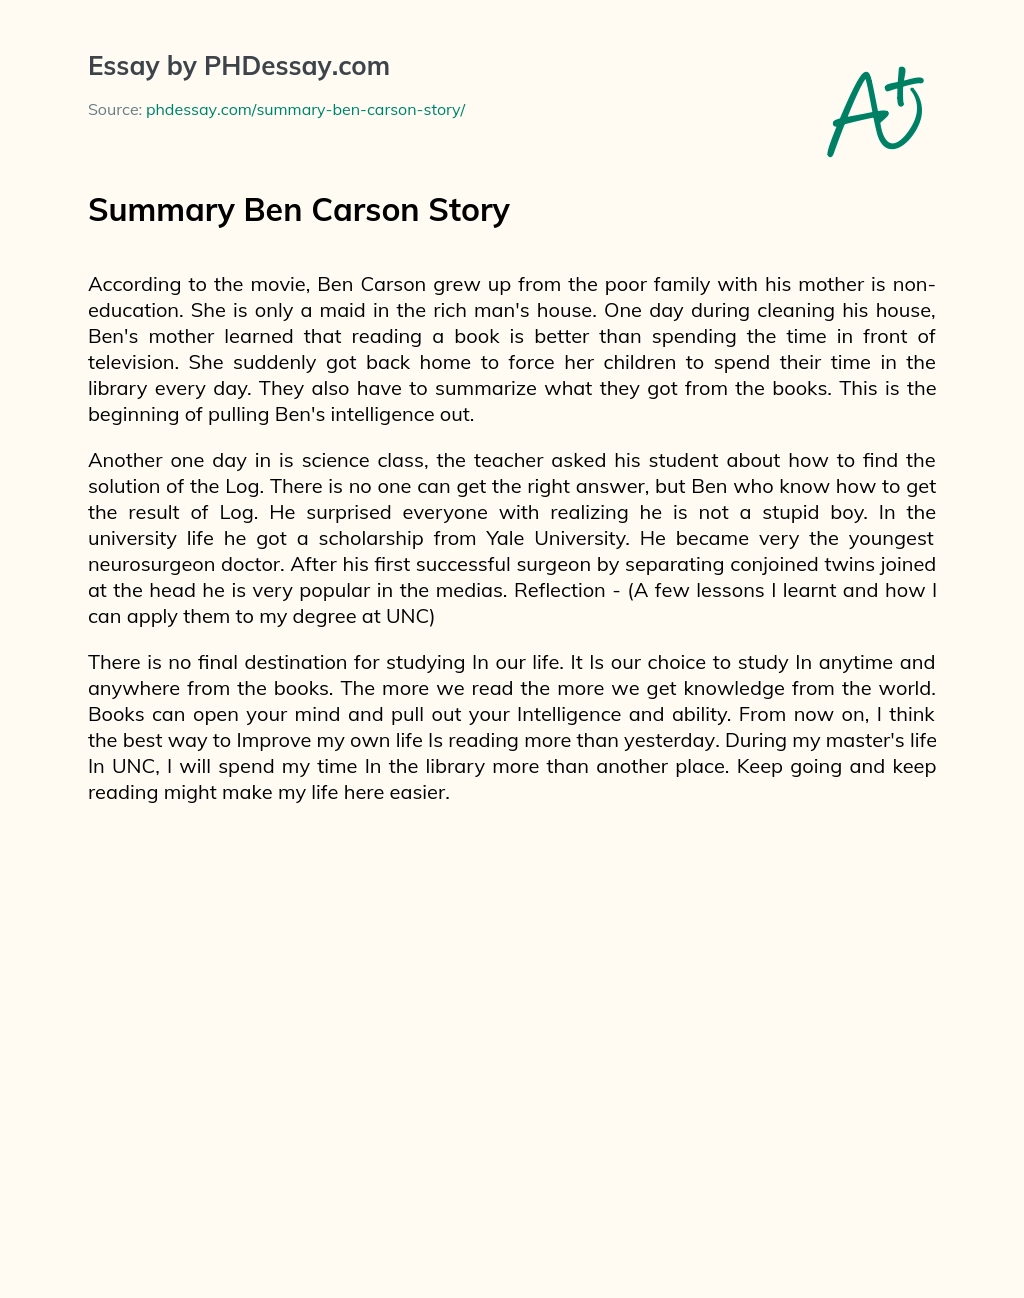 Summary Ben Carson Story essay